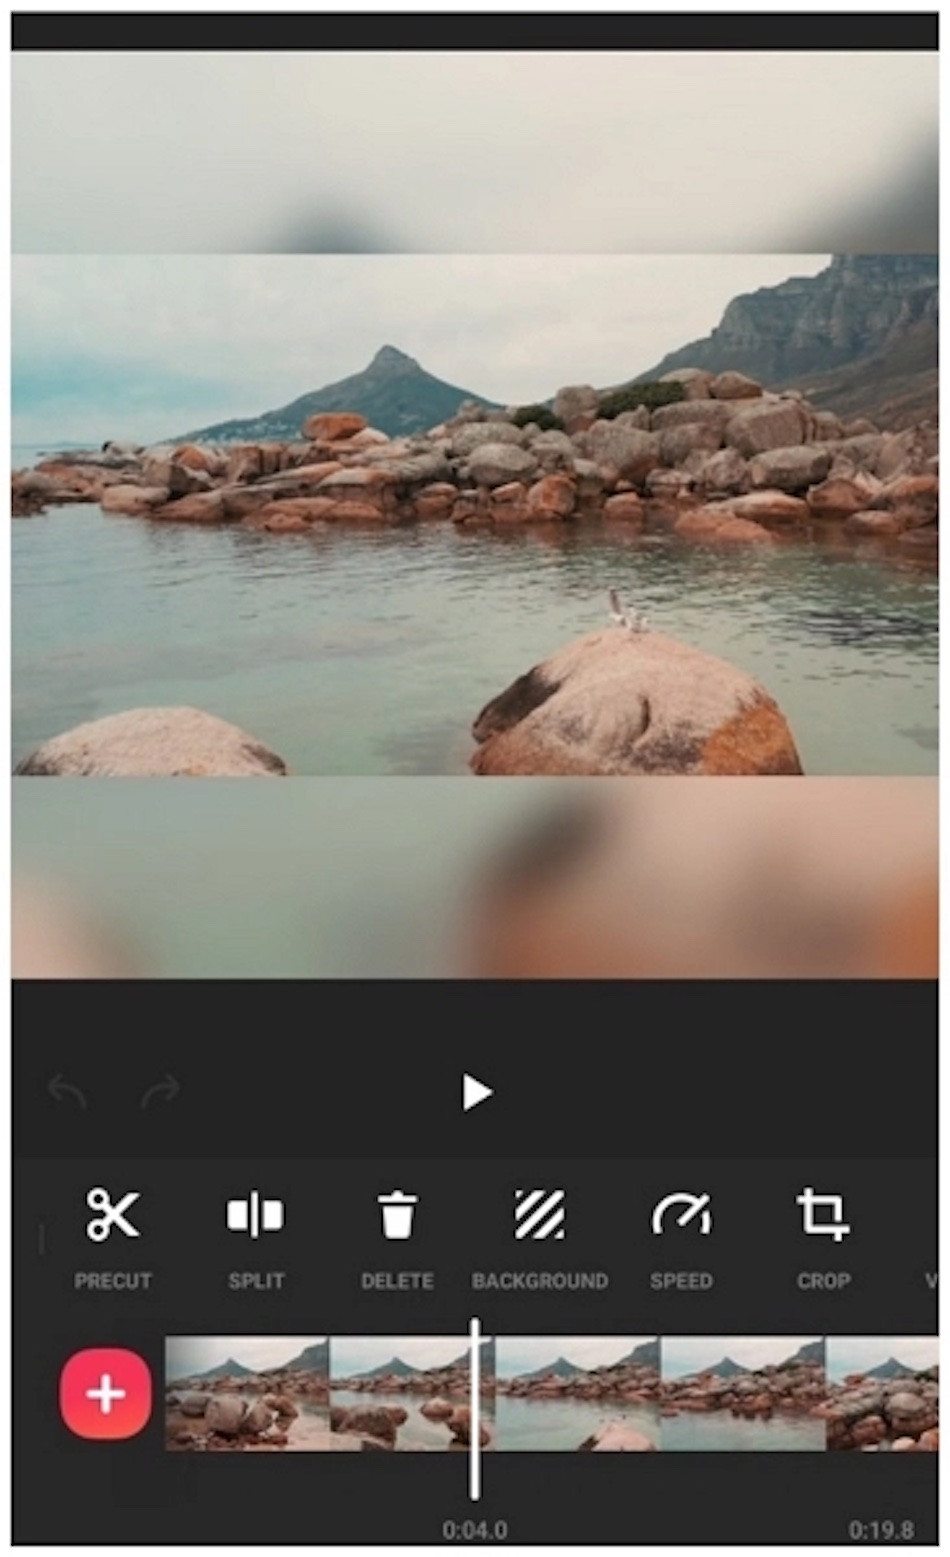 InShot 视频编辑应用程序界面显示海滩场景和编辑控件。